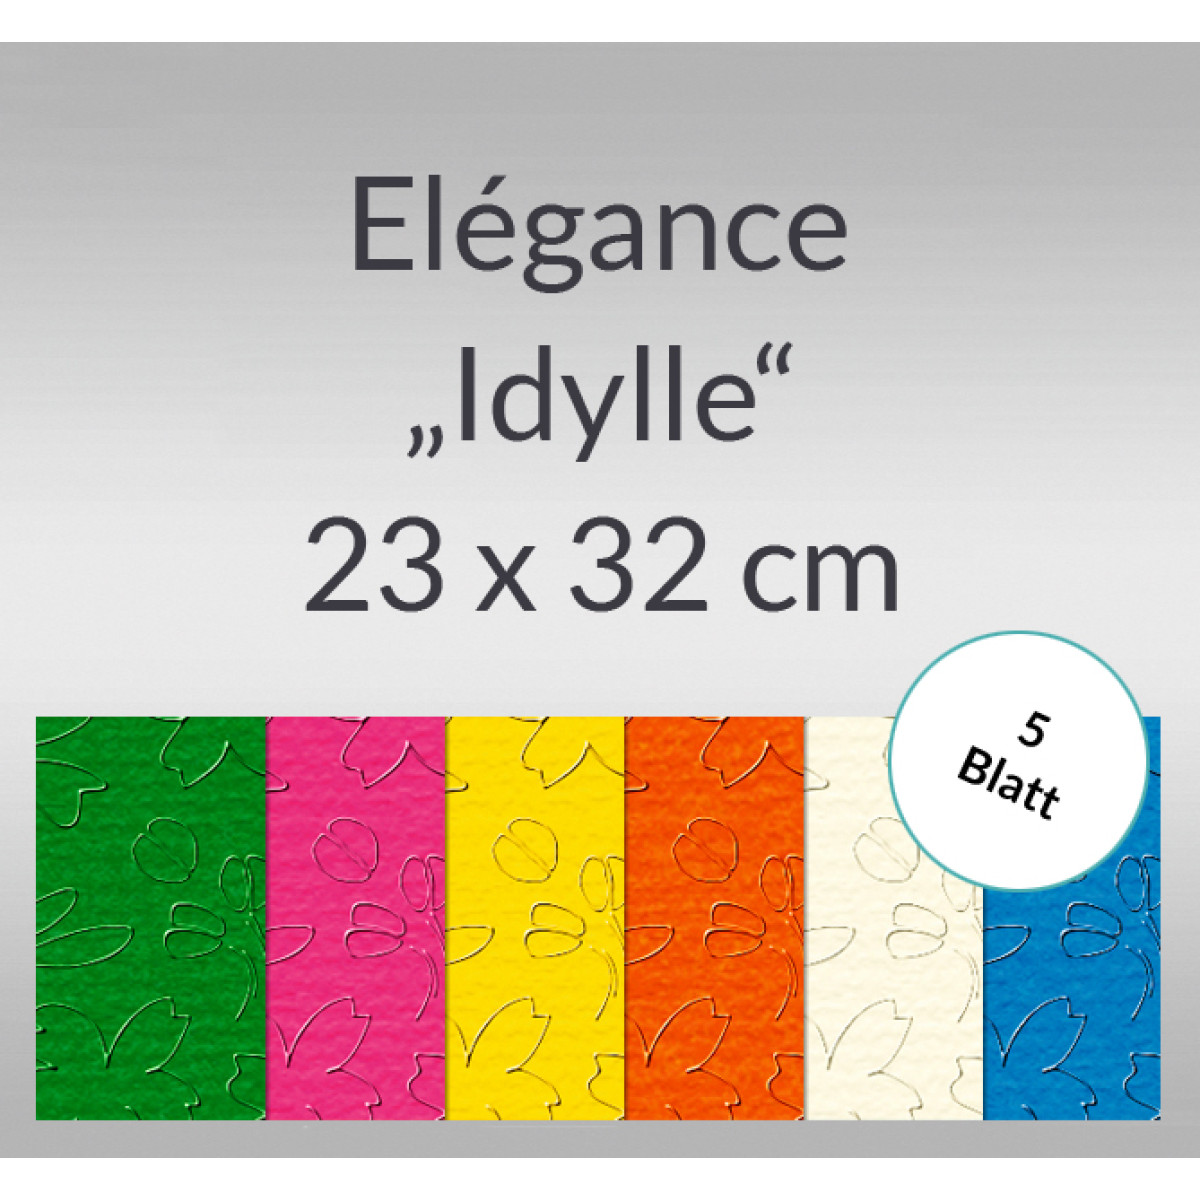 Elegance "Idylle" 220 g/qm 23 x 32 cm - 5 Blatt